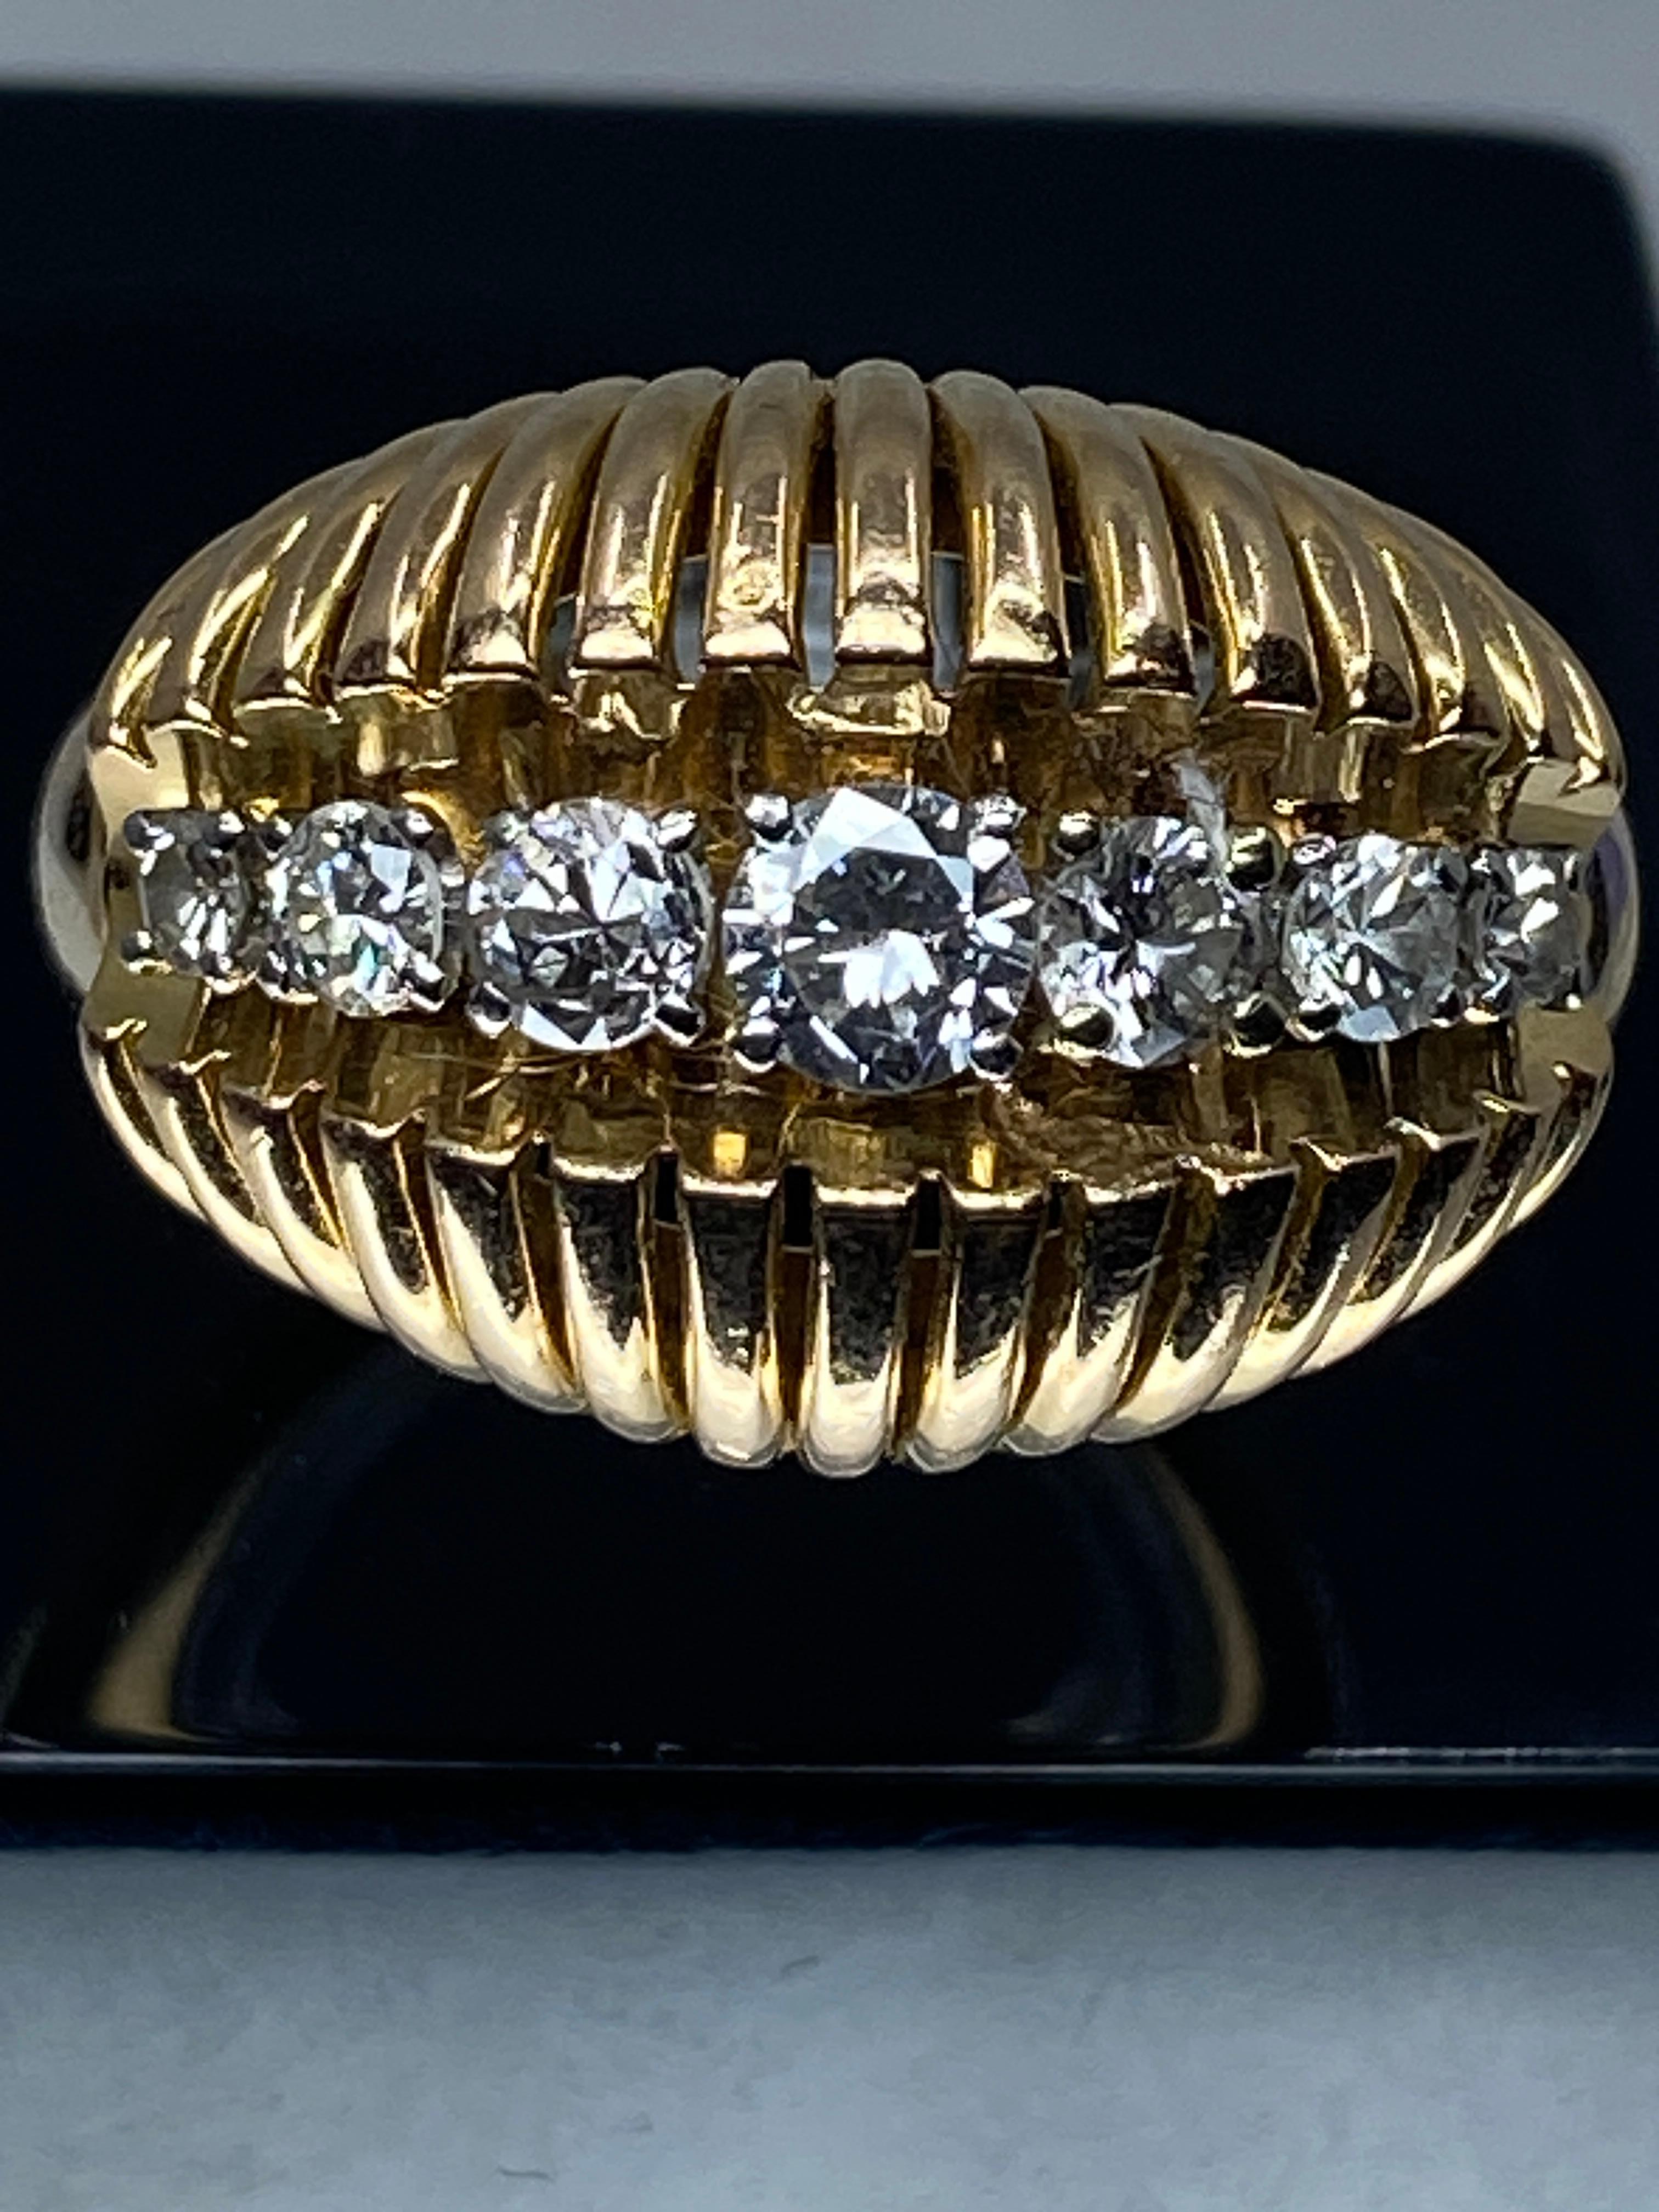 Ravissante bague en or 18 carats de forme jonc bombée, stylisée de fils d'or. Le centre est orné d'une ligne de diamants de taille brillant, poids total des diamants 0.60/0.70 carat environ. Chacun est serti par 4 Griffes en platine. Le charme de